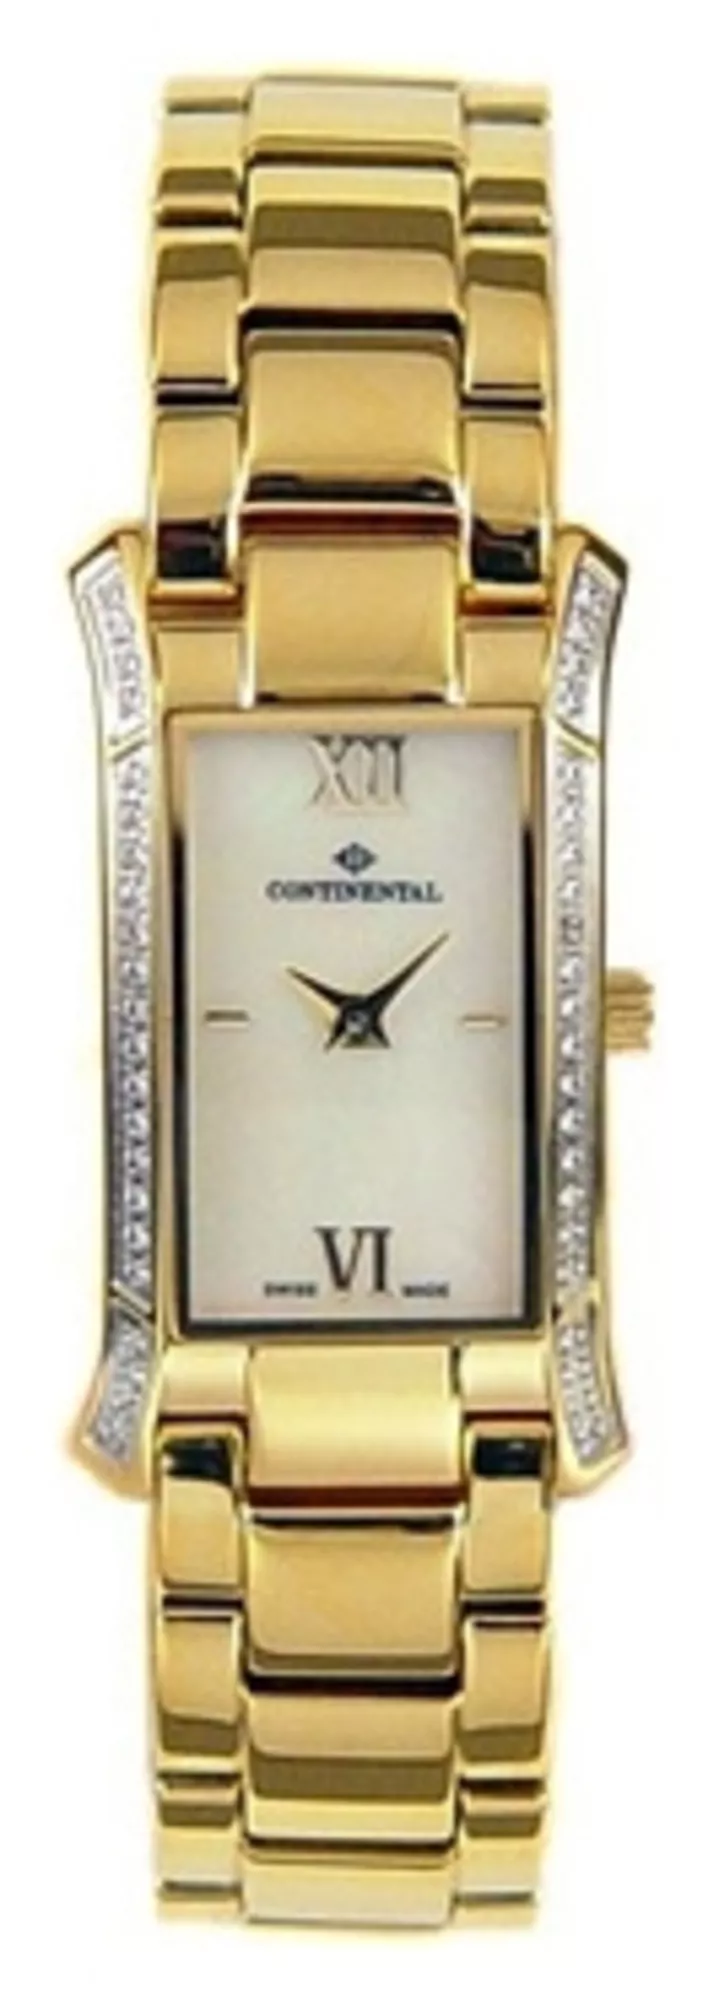 Часы Continental 1354-235